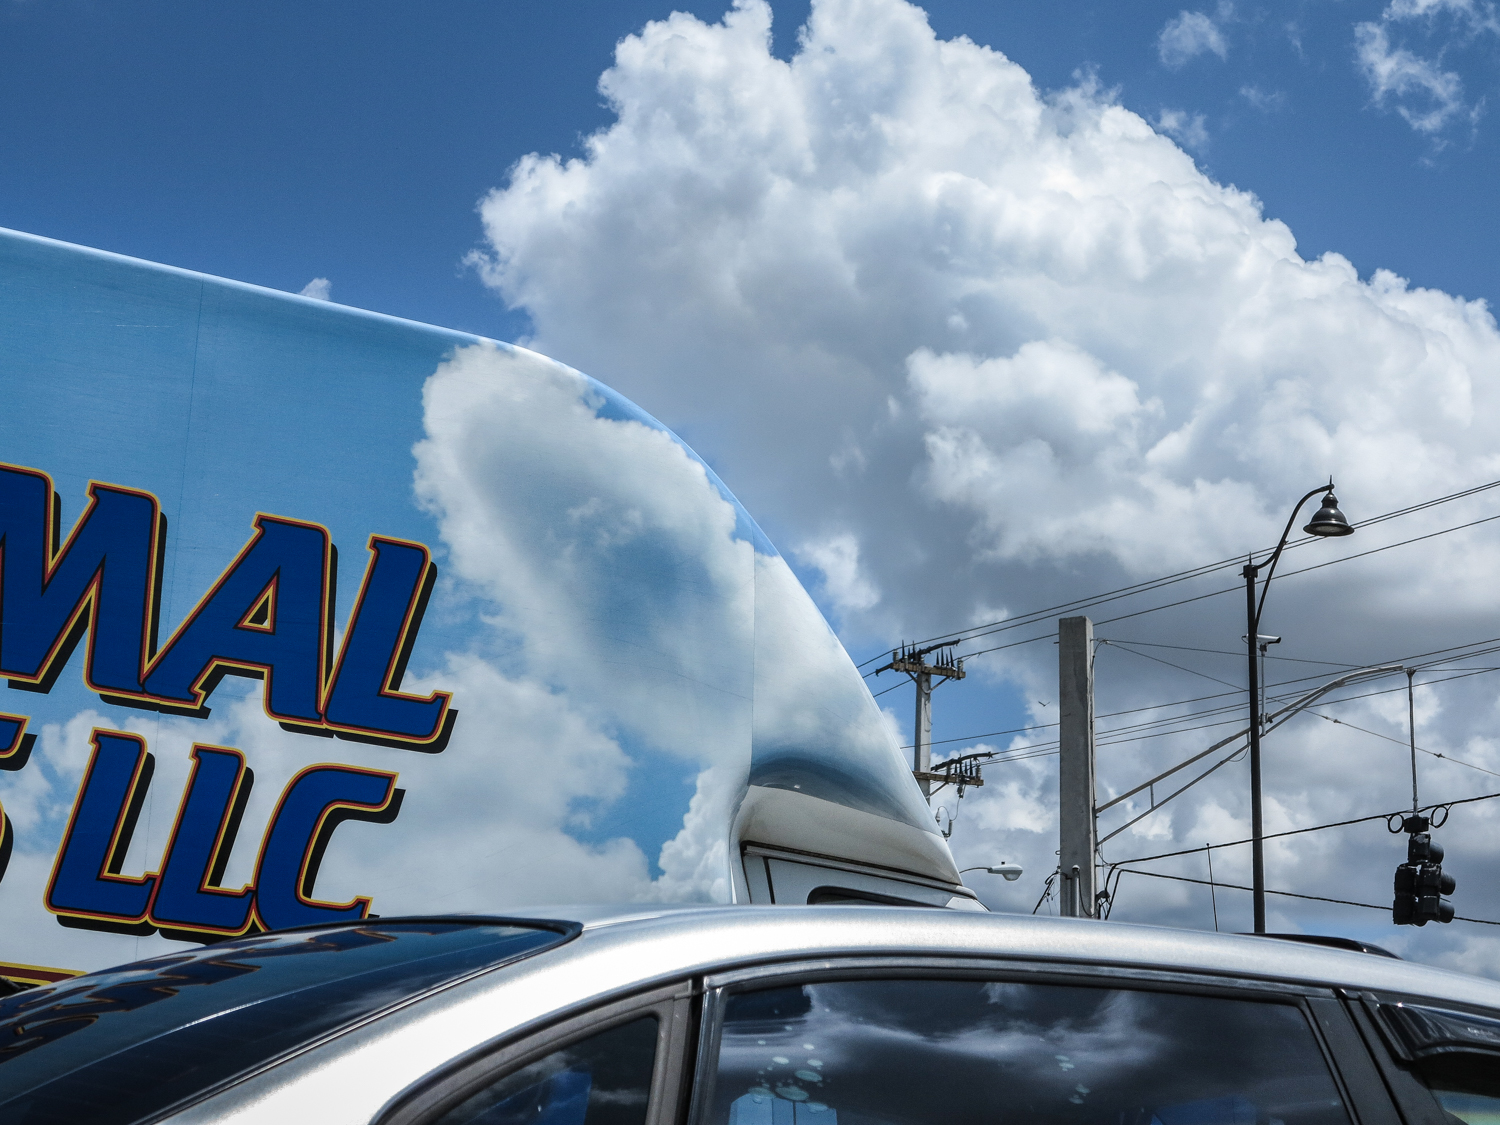 Cloud Truck, Bonita Springs, Florida 2013 from AMERICOLOR series